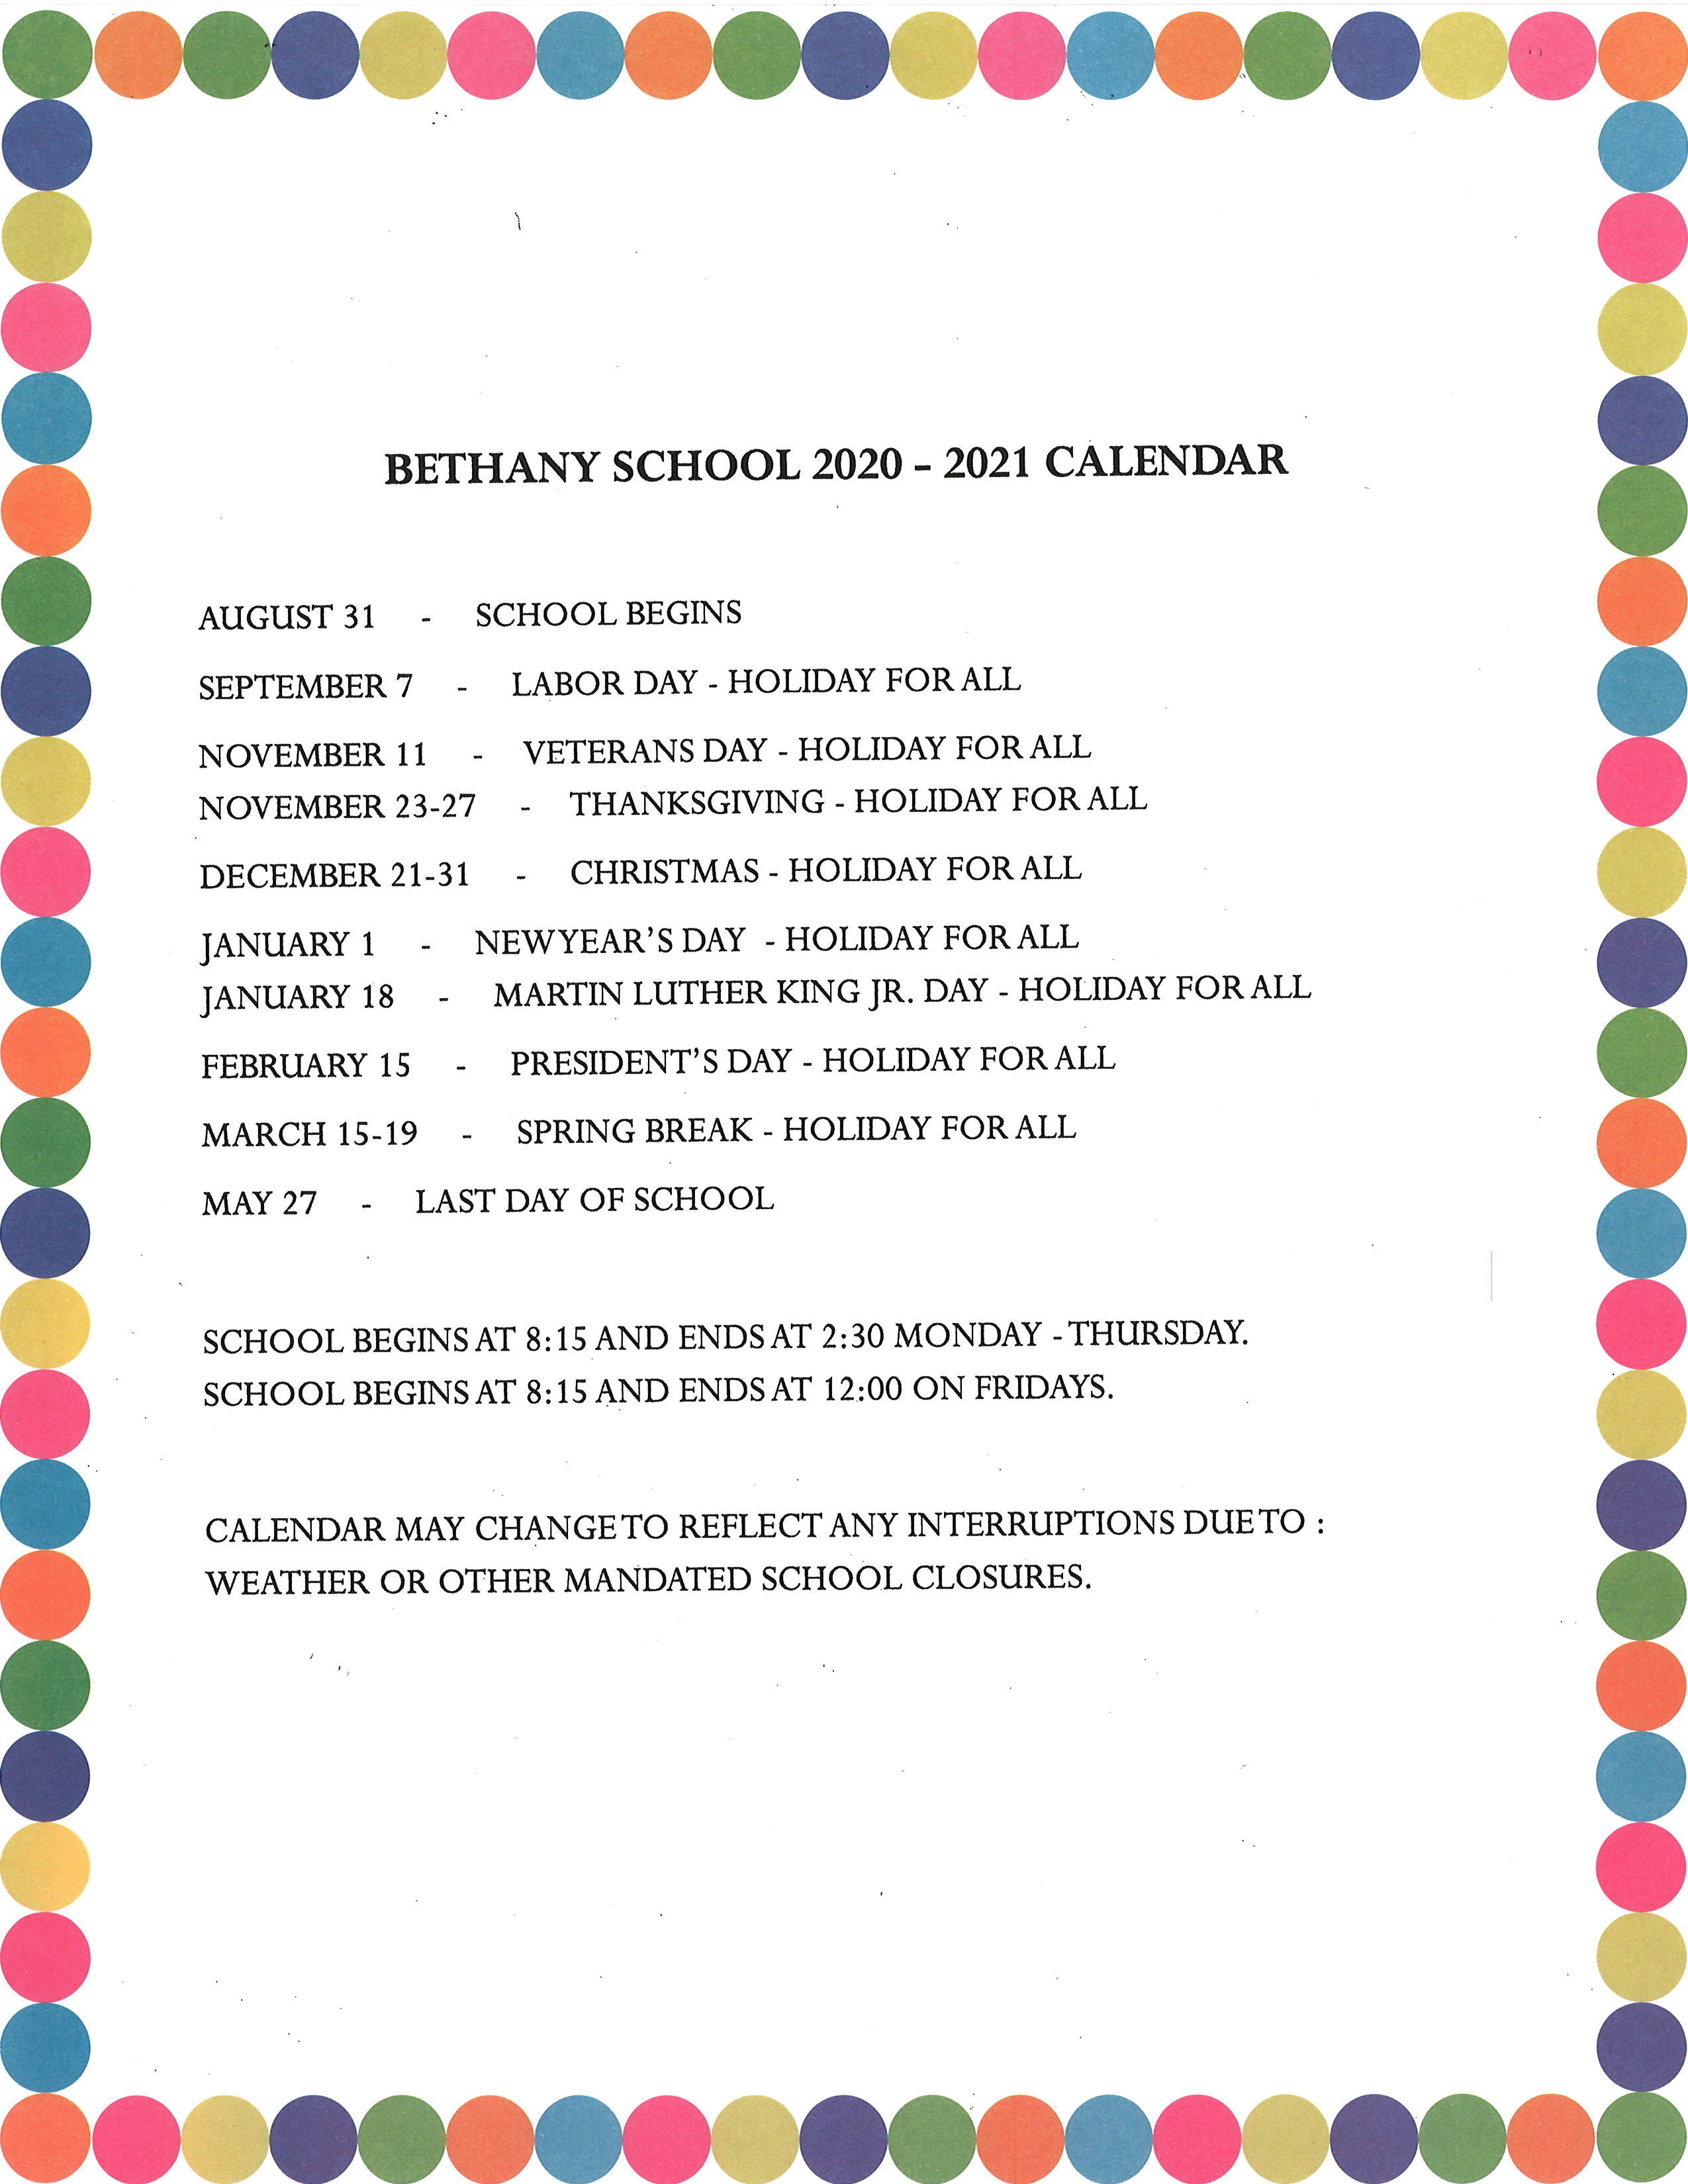 Bethany School Website > School Calendar